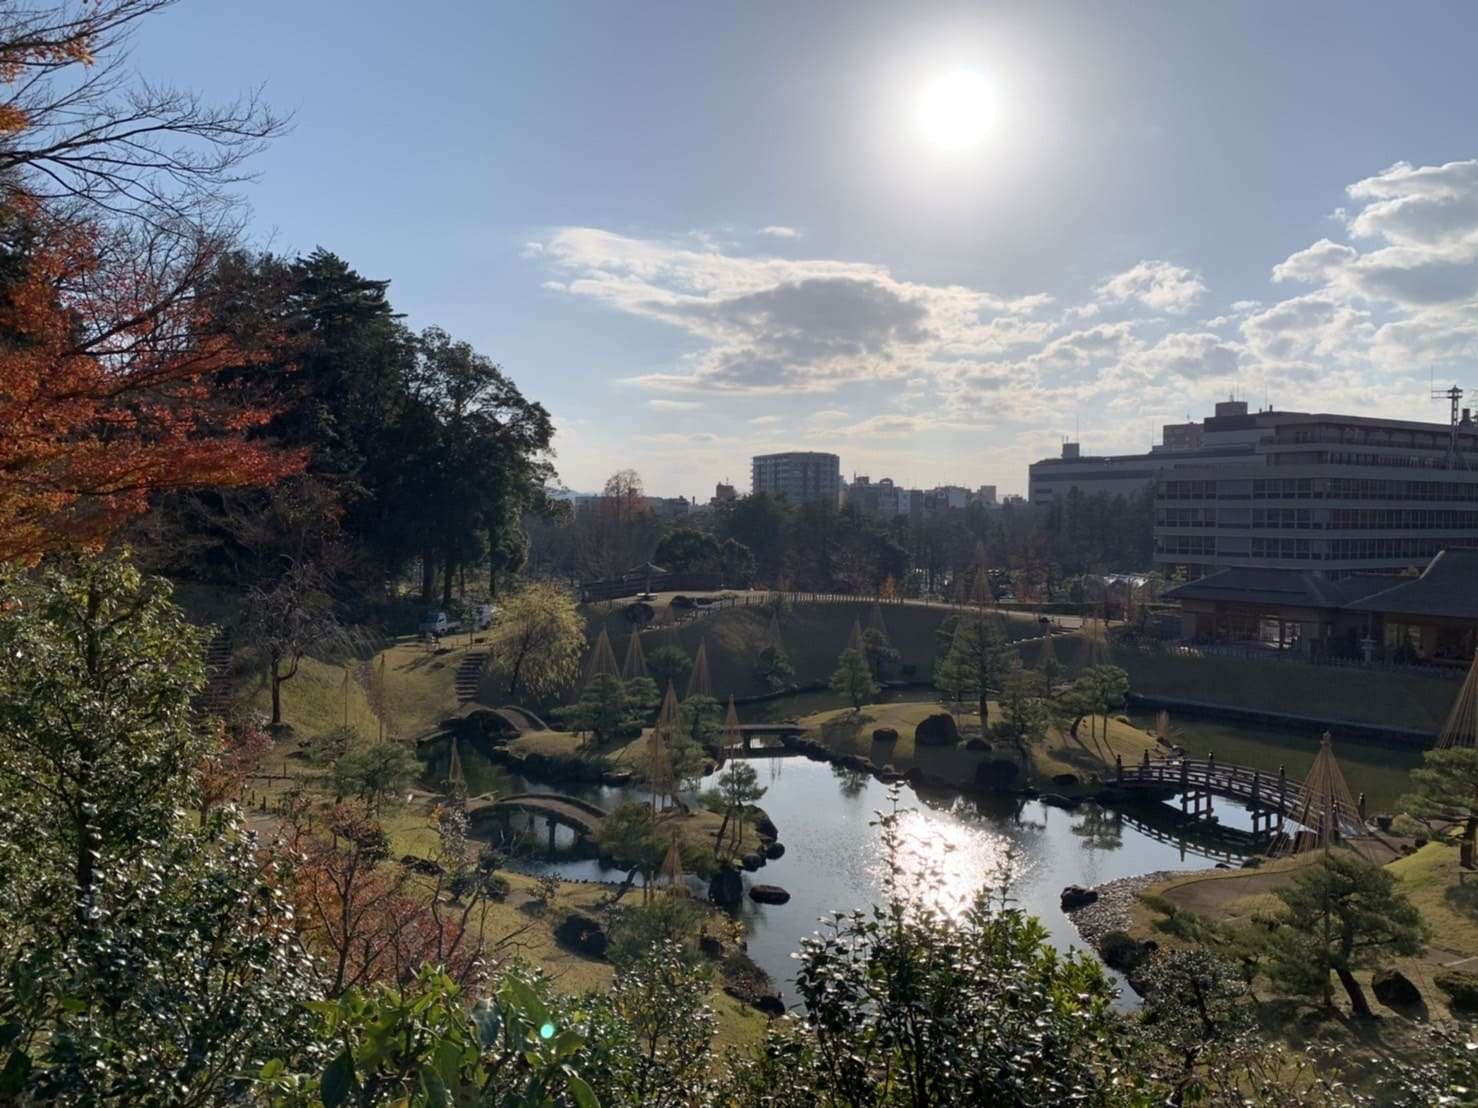 金沢城公園の庭園